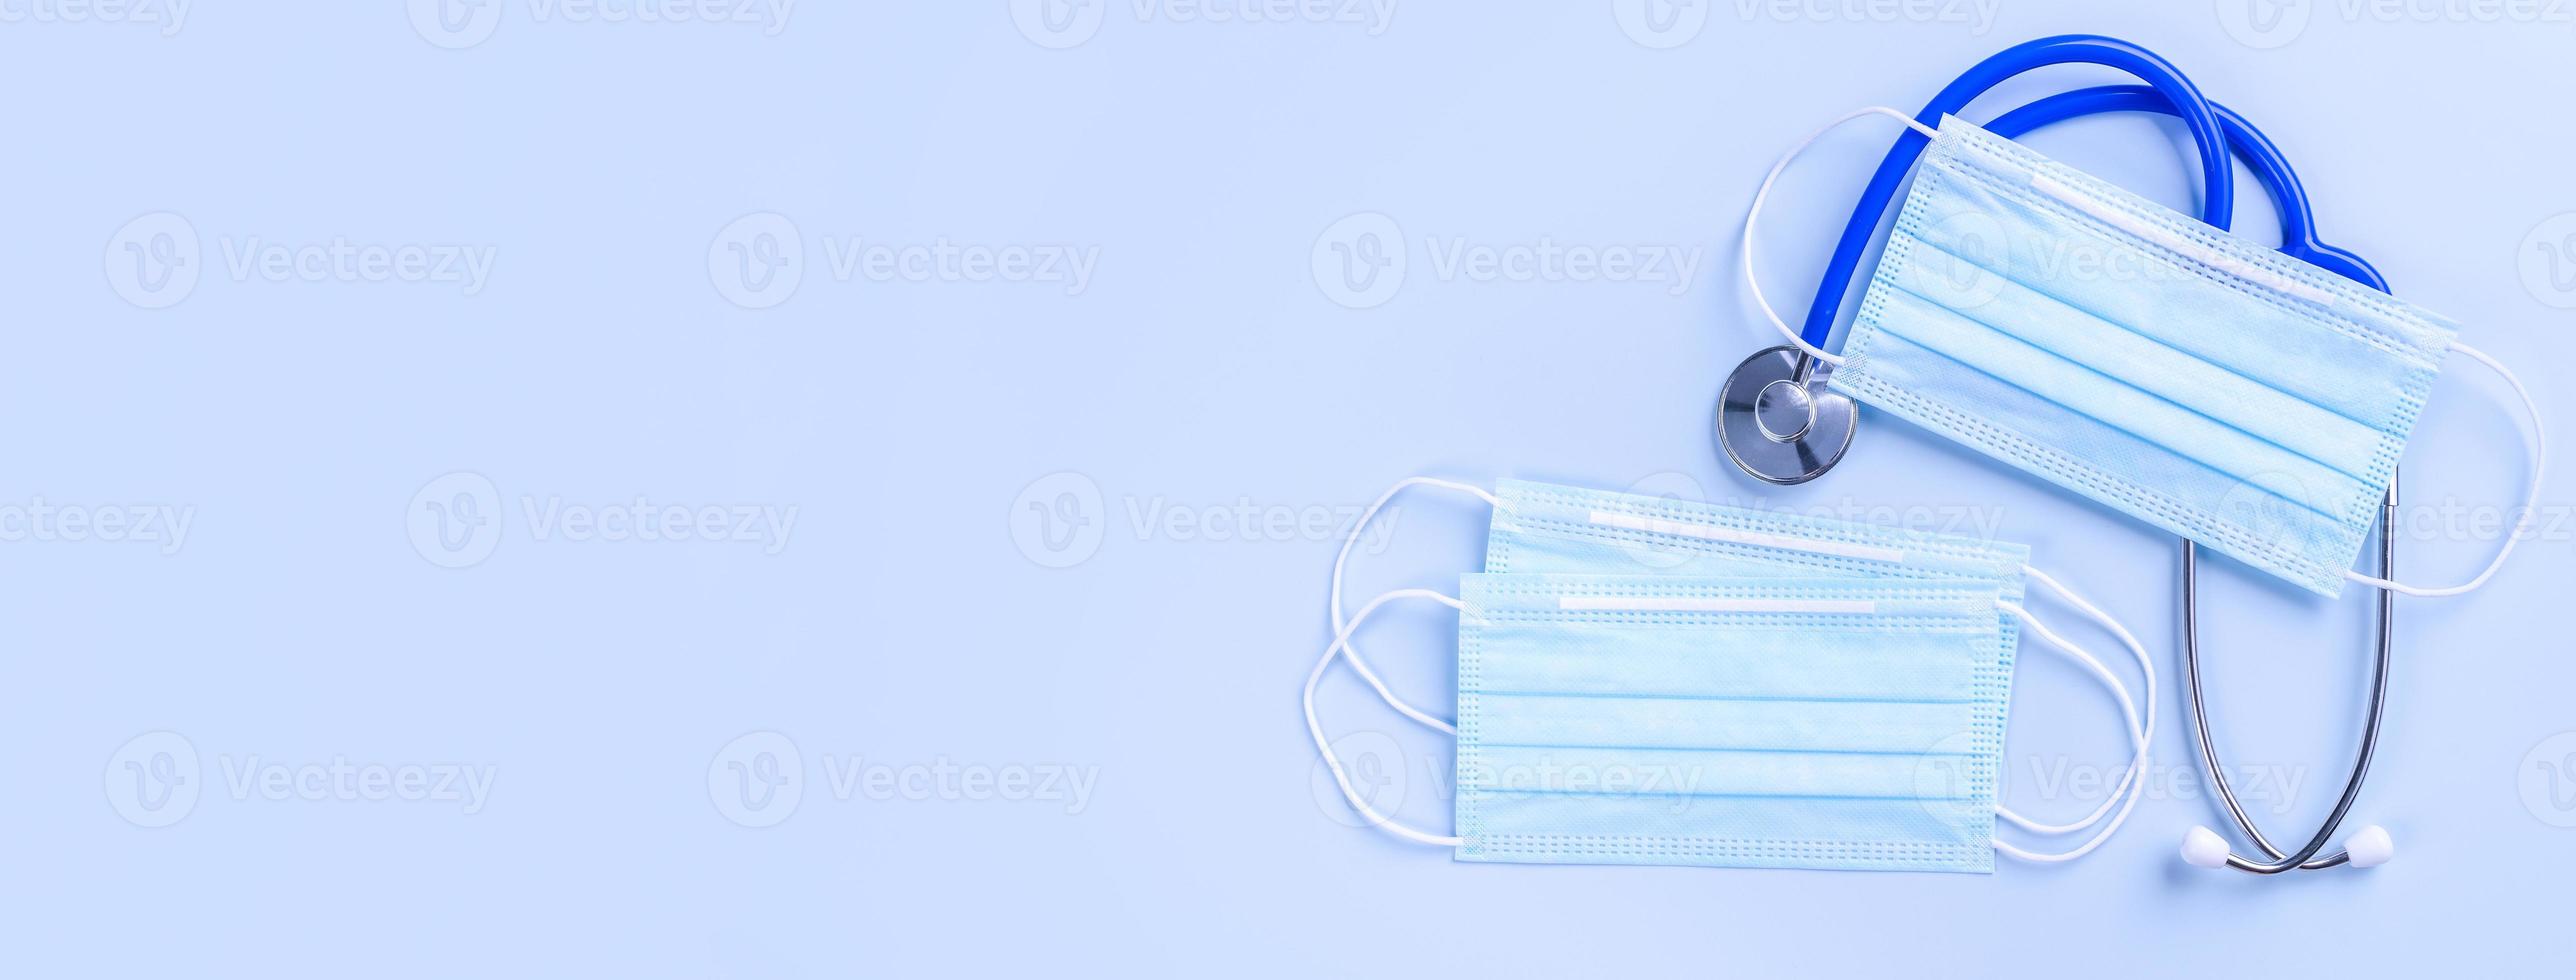 blå mask - medicinsk Utrustning med stetoskop, begrepp av värld sjukdom pandemi infektion och förebyggande, topp se, platt lägga, över huvudet design foto